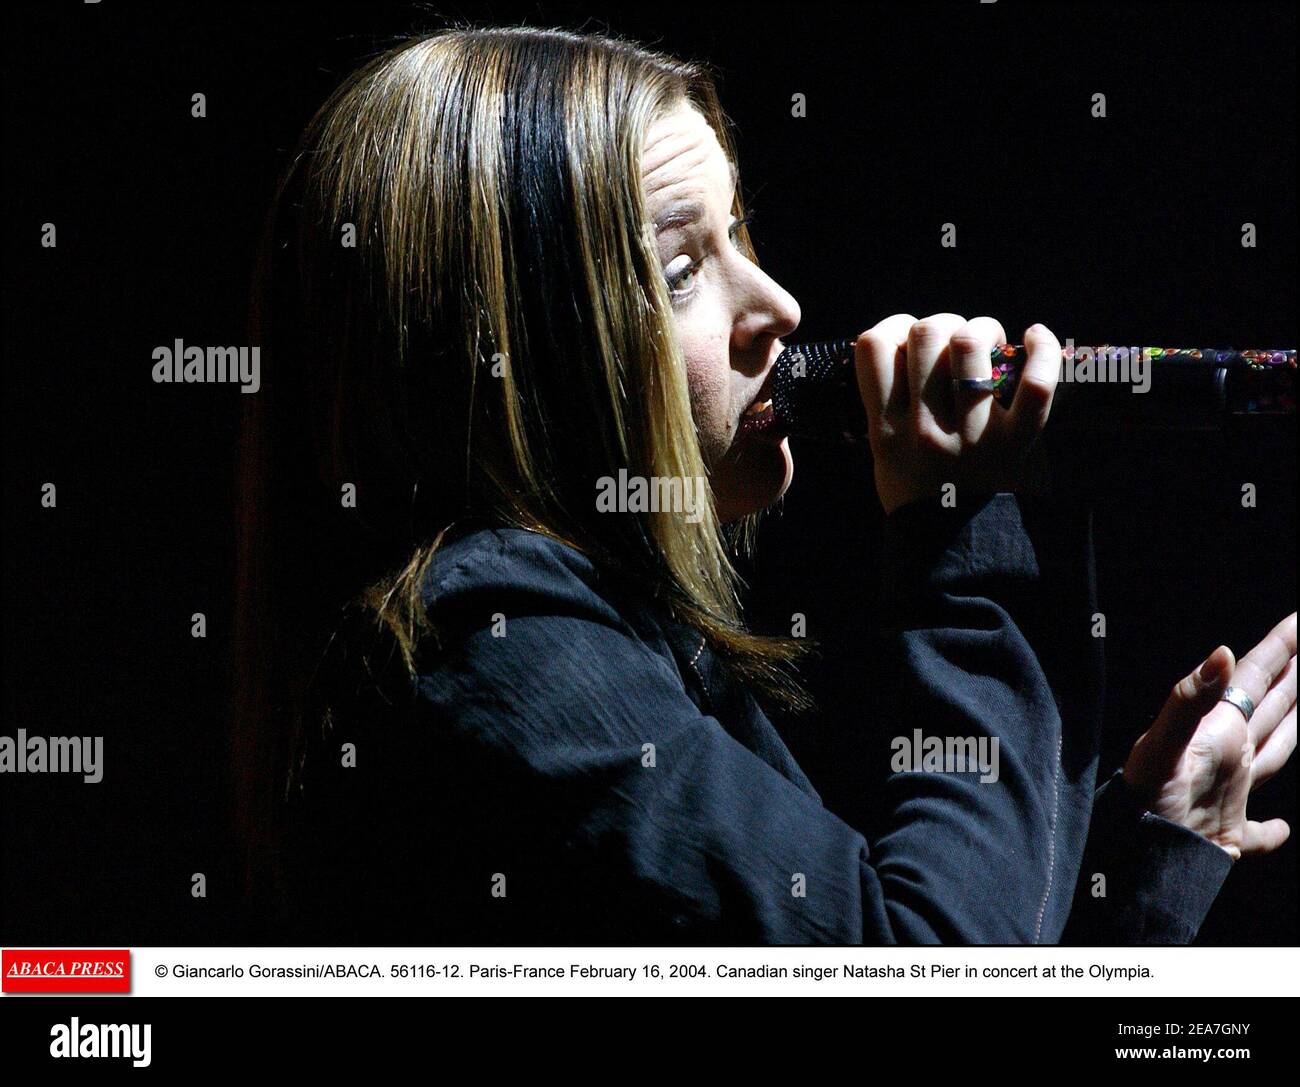 © Giancarlo Gorassini/ABACA. 56116-12. Parigi-Francia 16 febbraio 2004. La cantante canadese Natasha St-Pier in concerto all'Olympia. Foto Stock